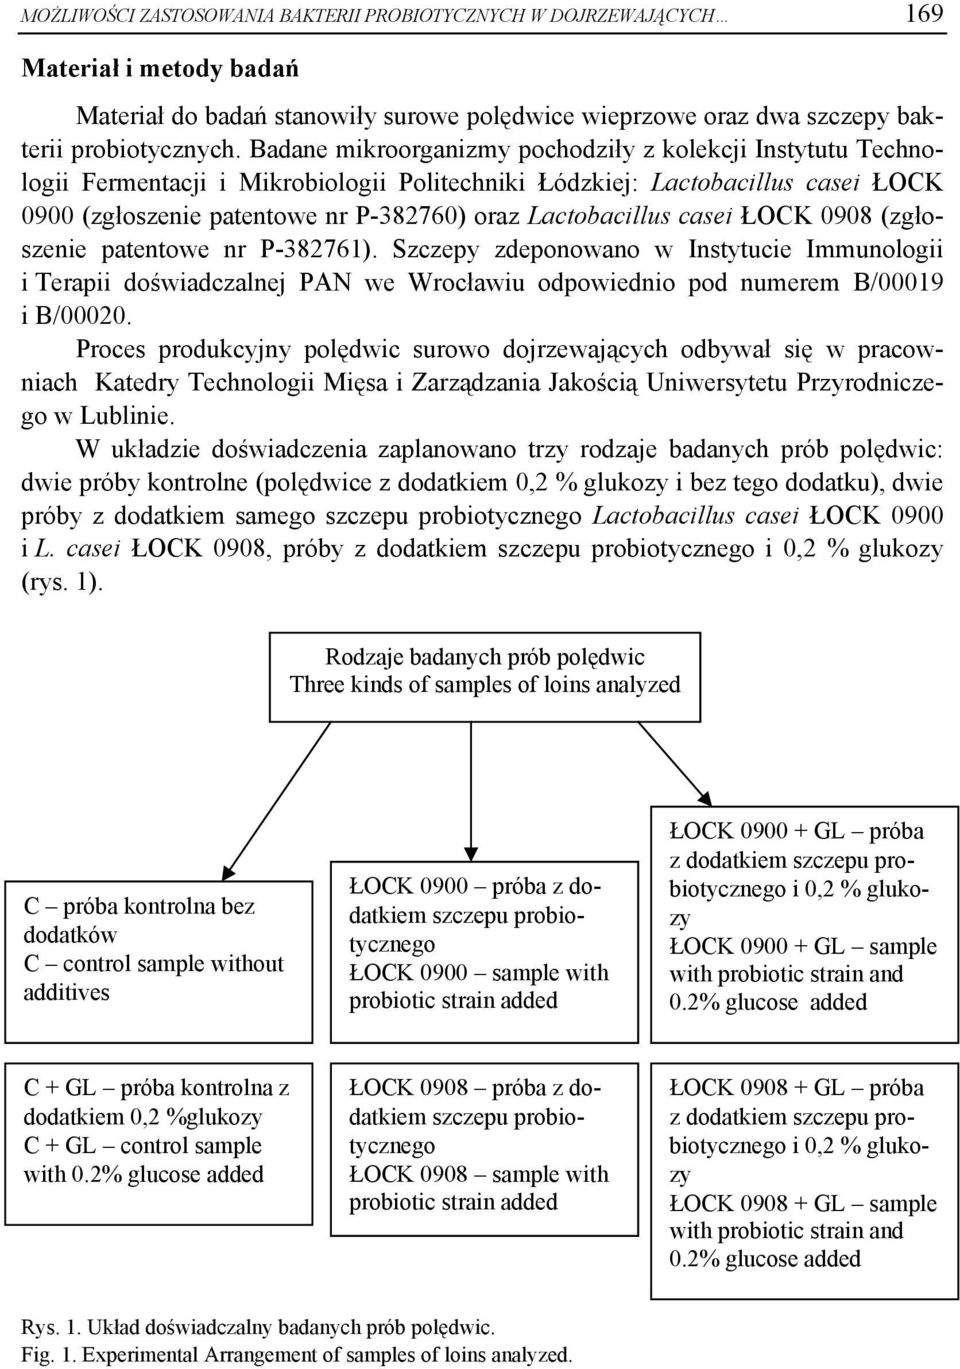 Lactobacillus casei ŁOCK 0908 (zgłoszenie patentowe nr P-382761). Szczepy zdeponowano w Instytucie Immunologii i Terapii doświadczalnej PAN we Wrocławiu odpowiednio pod numerem B/00019 i B/00020.